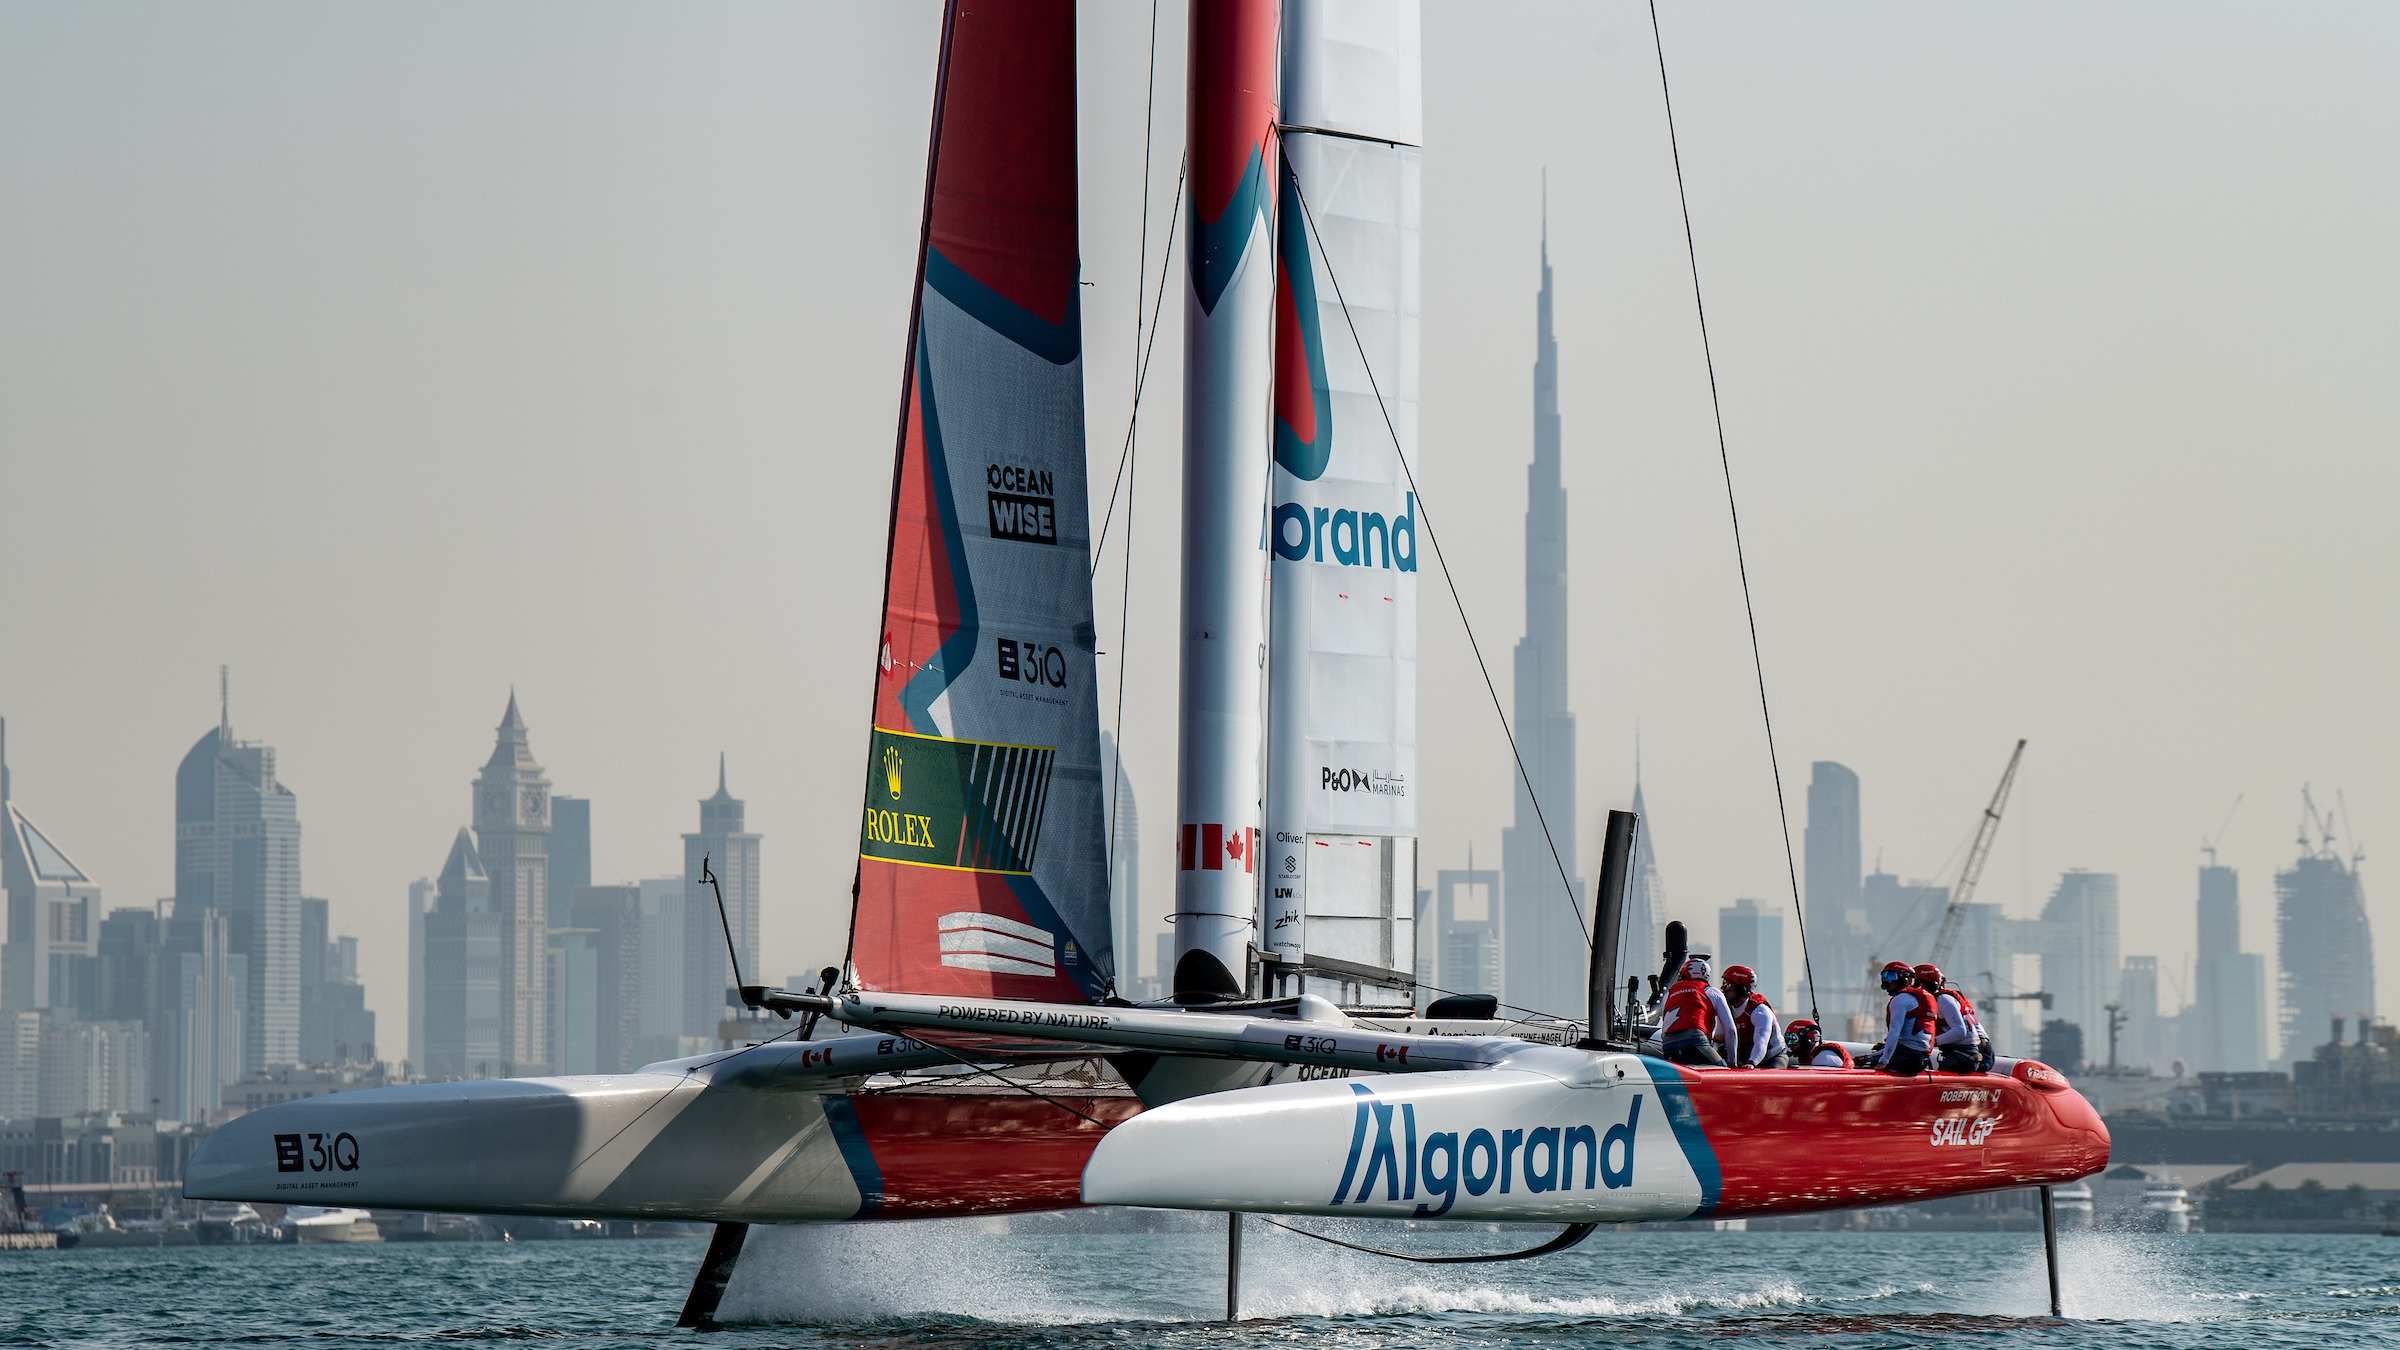 Saison 3 // Dubai Sail Grand Prix // Le Canada s'entraîne contre l'horizon de la ville de Dubaï 